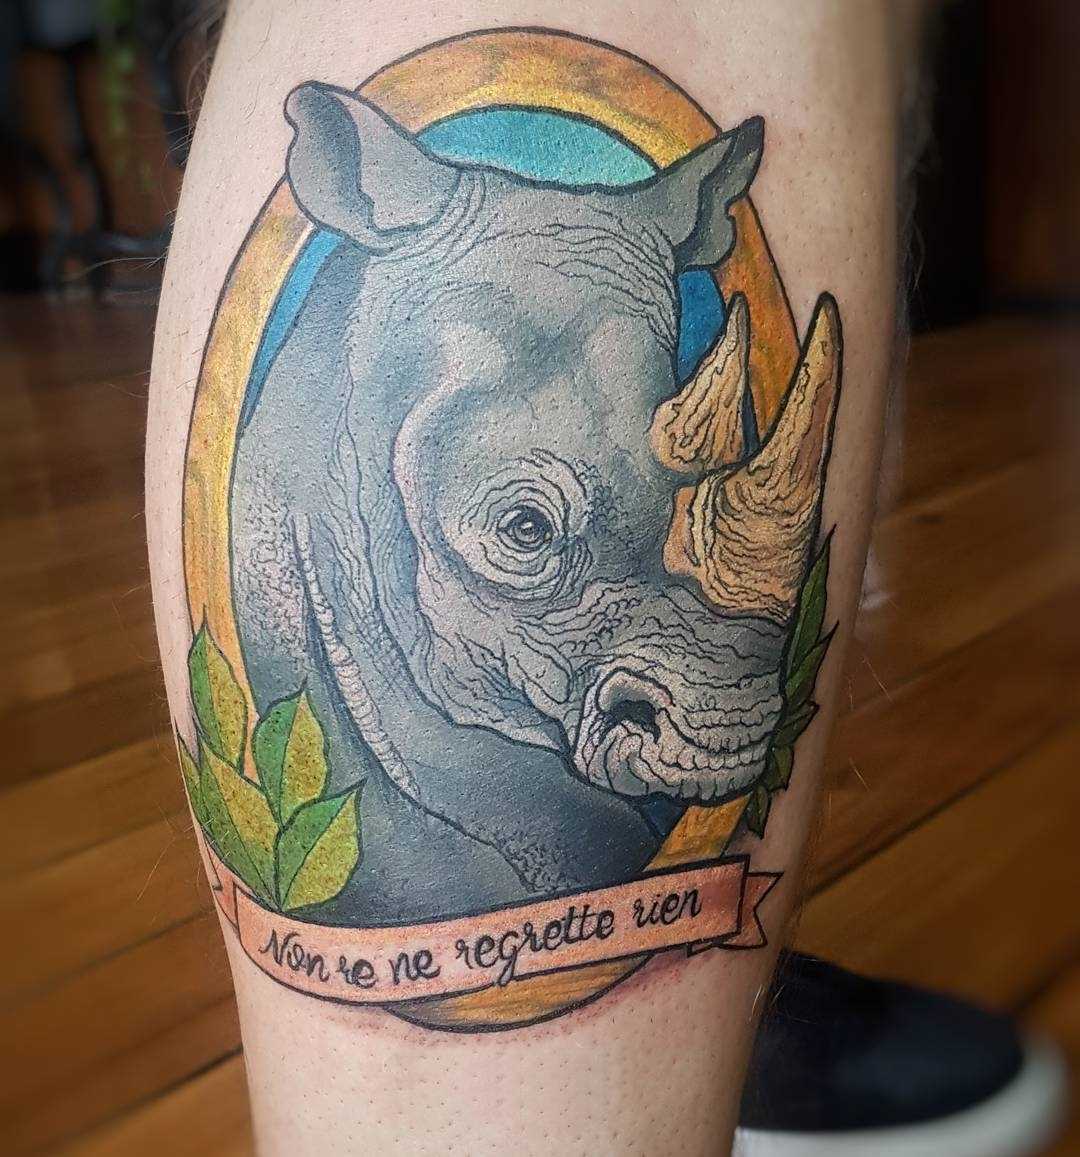 Cores de tatuagem de rinoceronte, com os dizeres sobre a perna de um cara